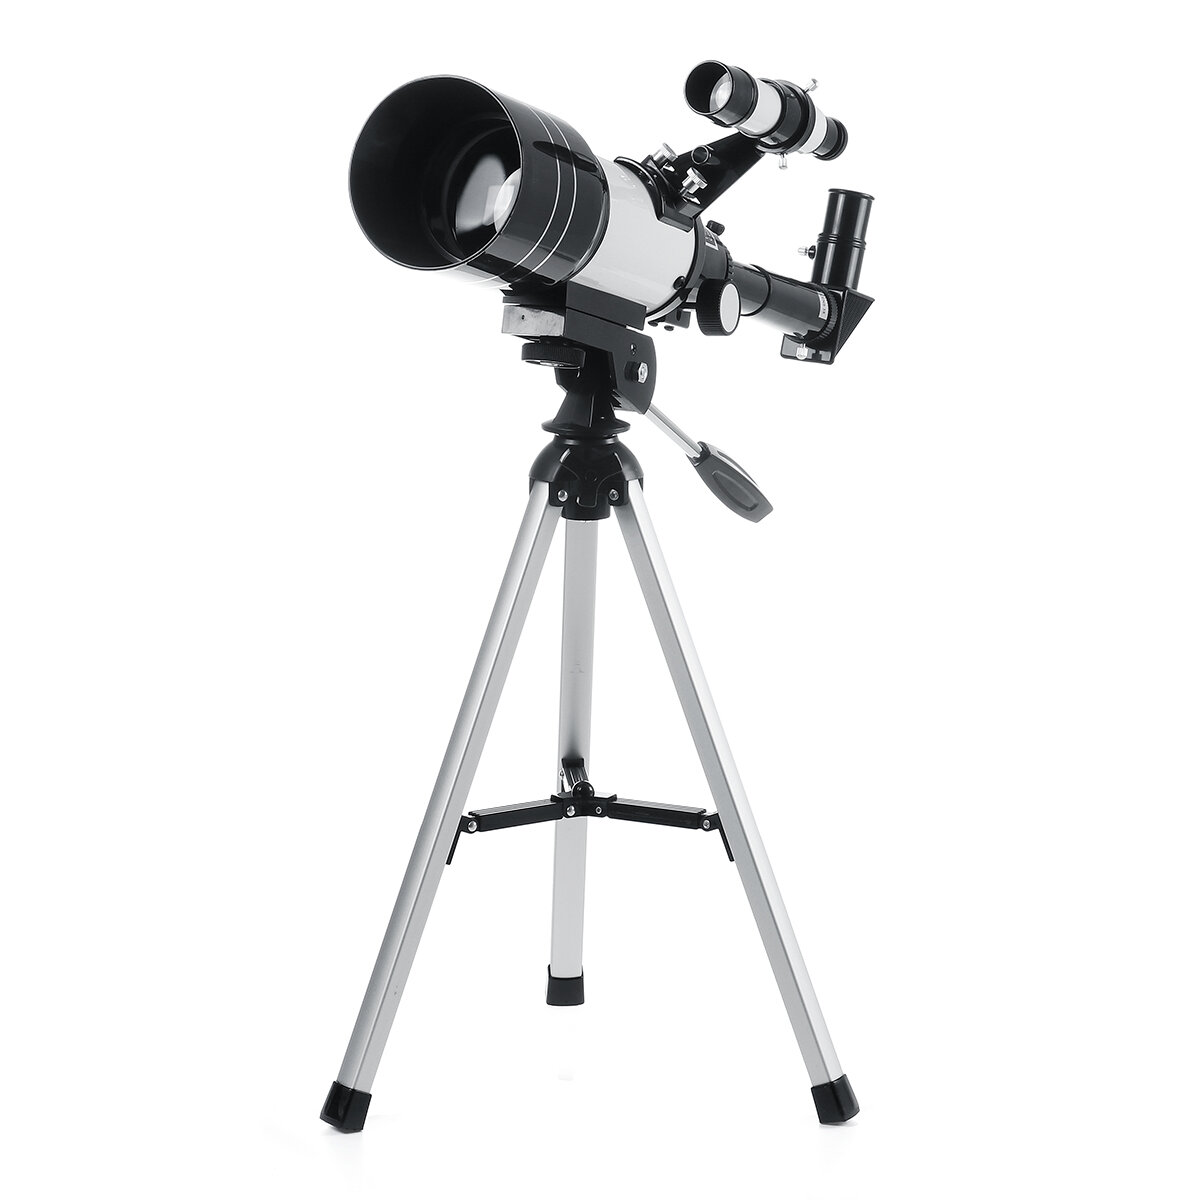 Астрономический телескоп профессионального качества 150х70 мм с высоким разрешением для наблюдения космоса и луны на открытом воздухе и дома.